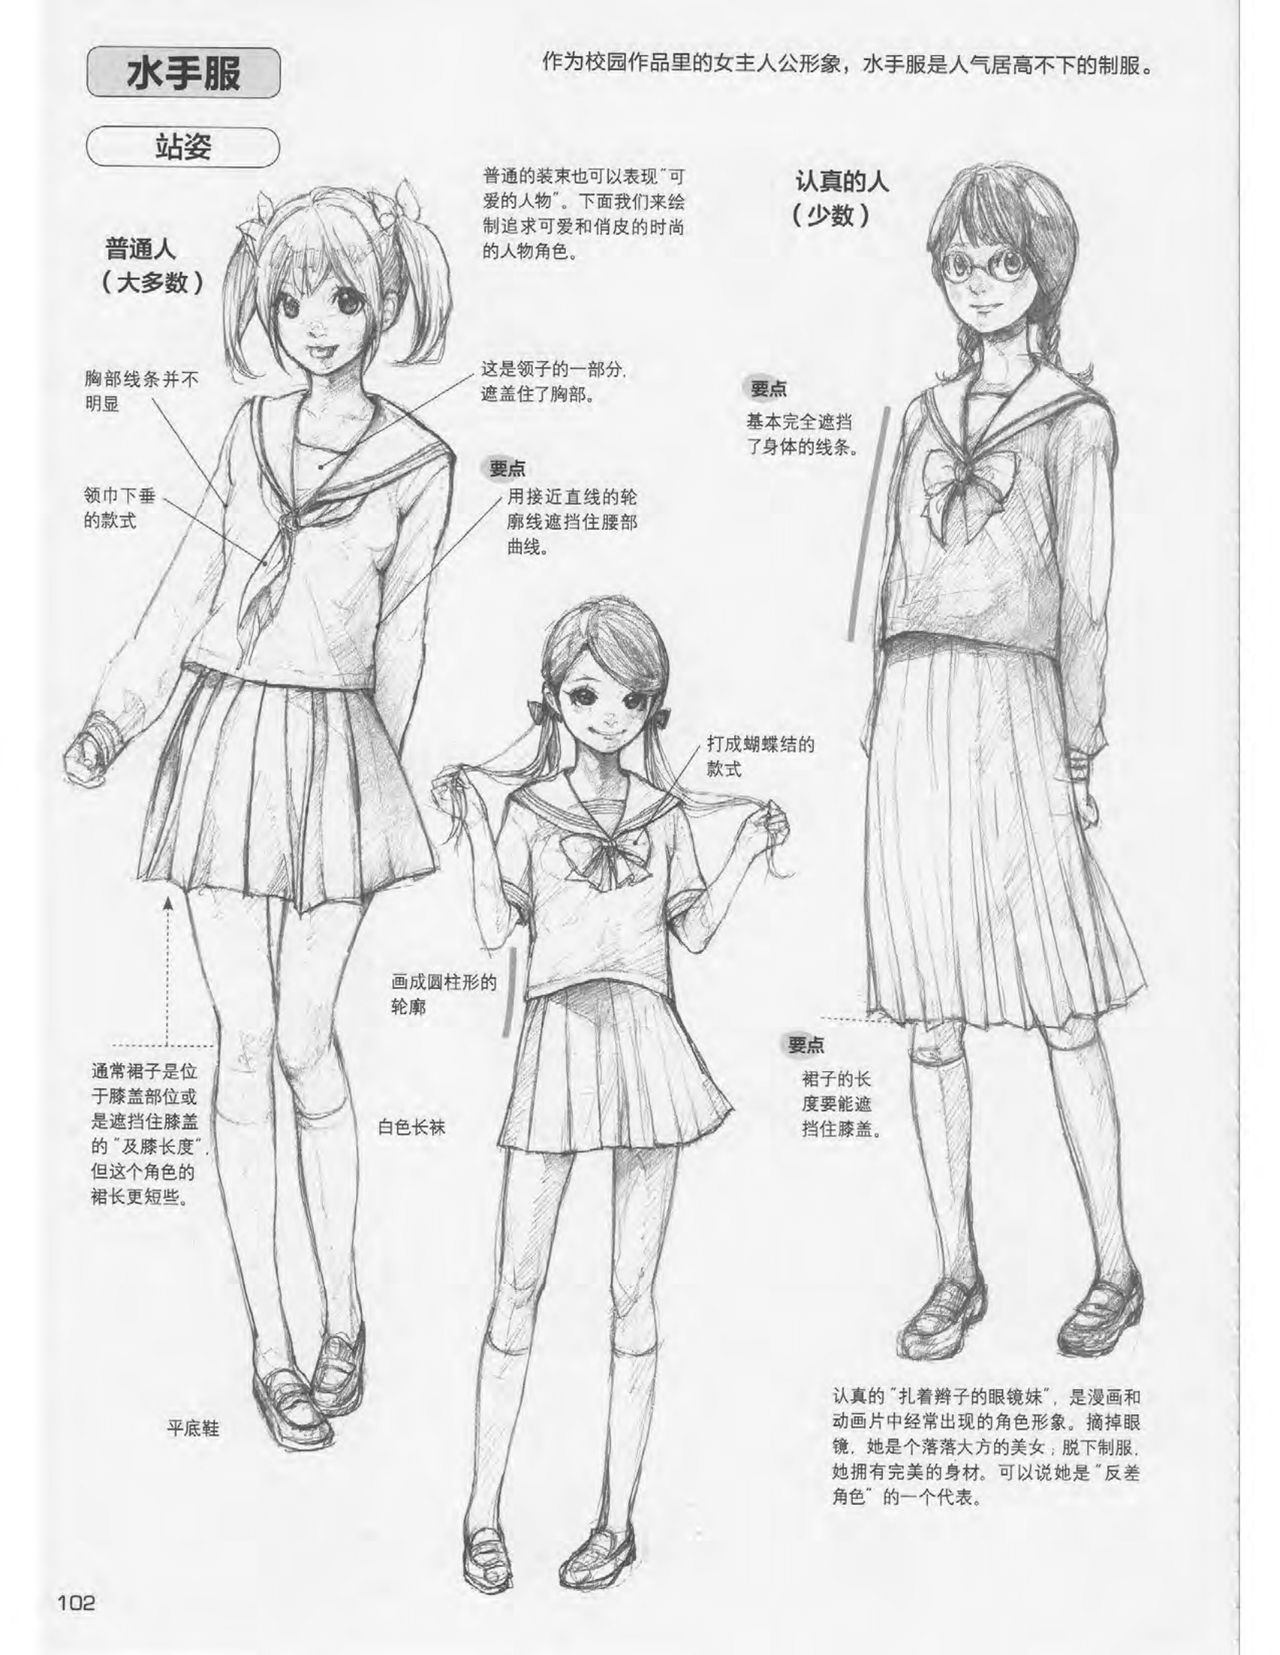 Japanese Manga Master Lecture 3: Lin Akira and Kakumaru Maru Talk About Glamorous Character Modeling 102